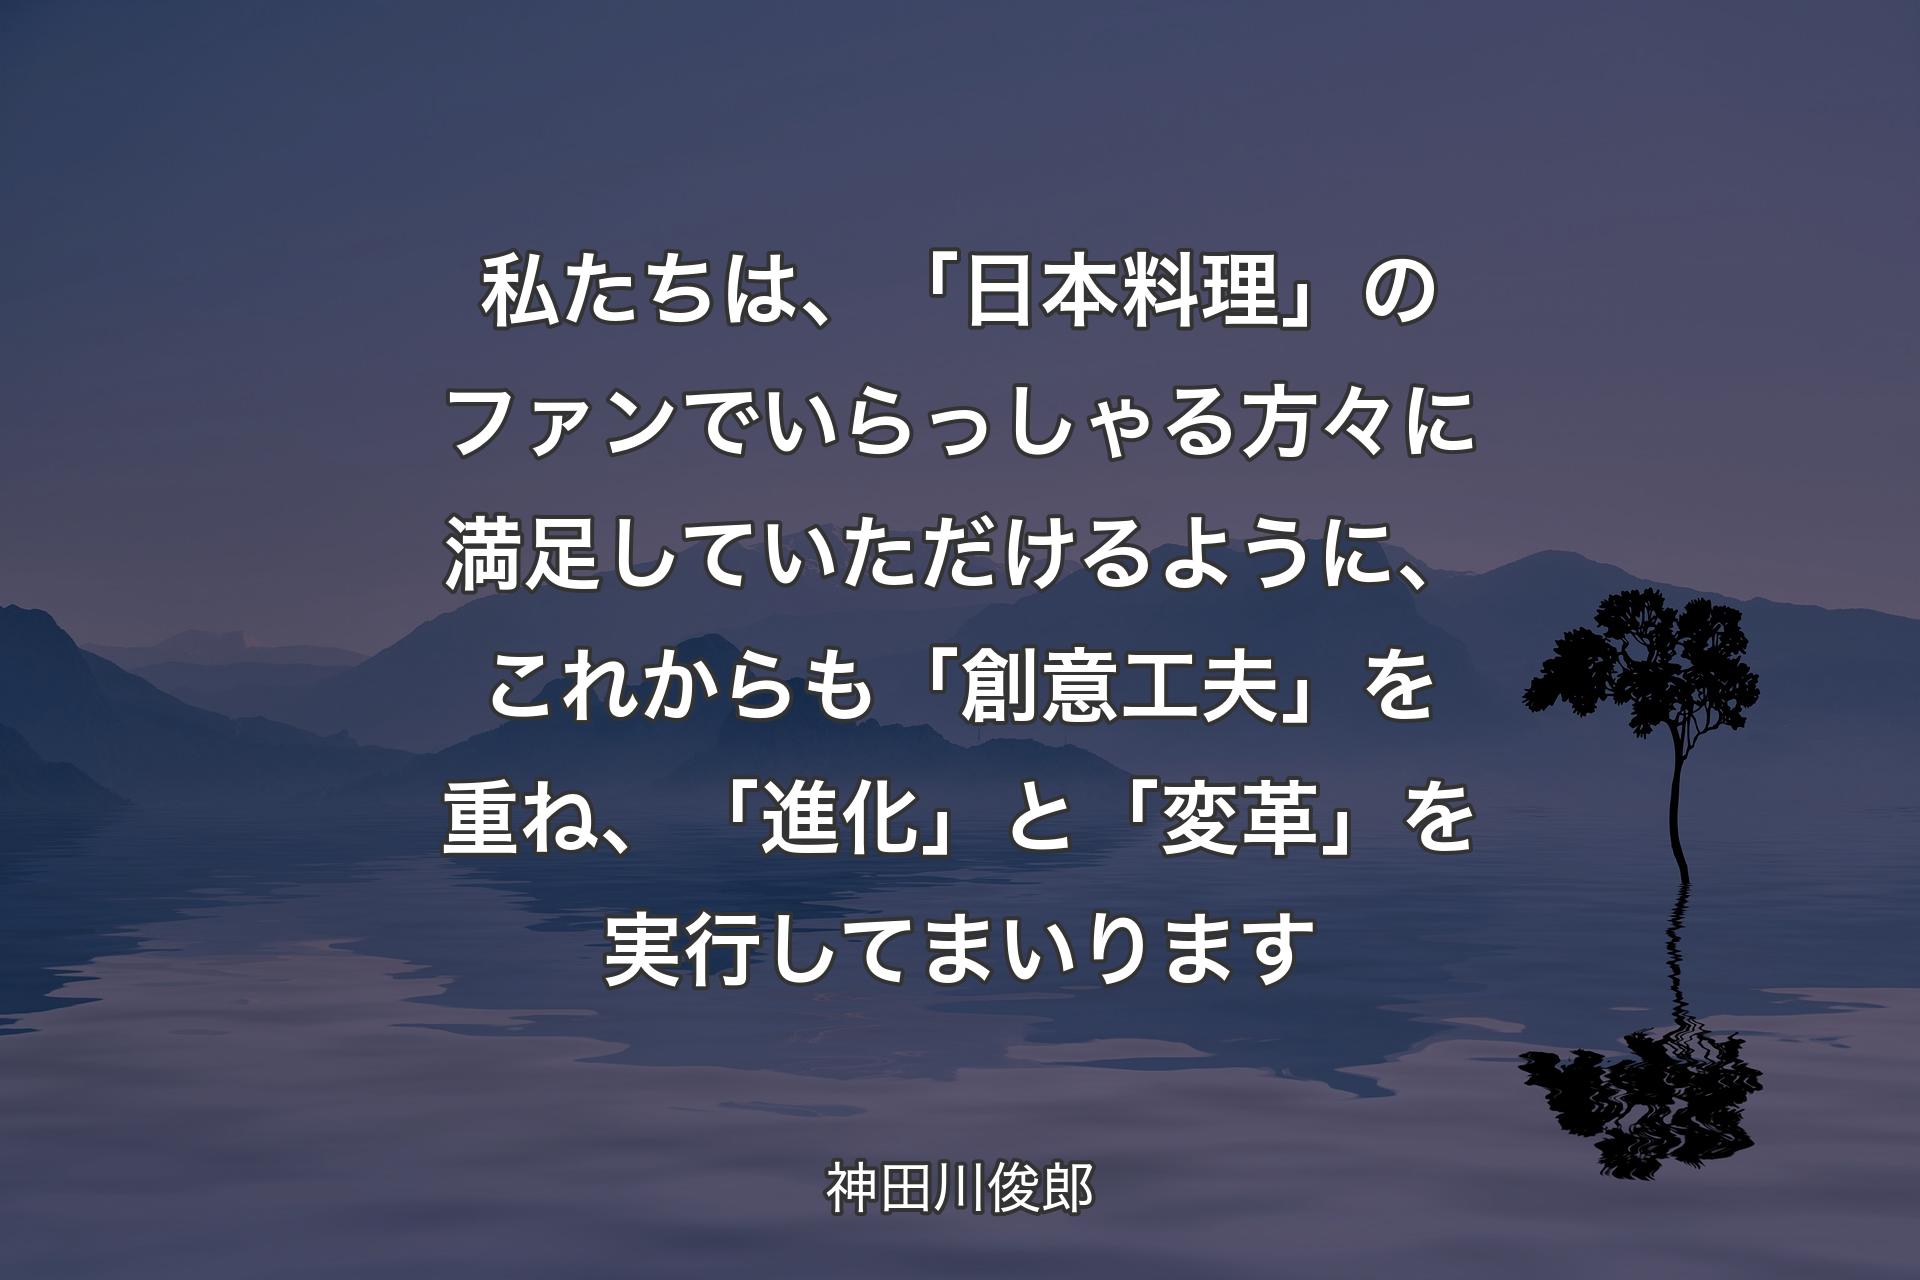 【背景4】私たちは、「日本料理」のファンでいらっしゃる方々に満足していただけるように、これからも「創意工夫」を重ね、「進化」と「変革」を実行してまいります - 神田川俊郎